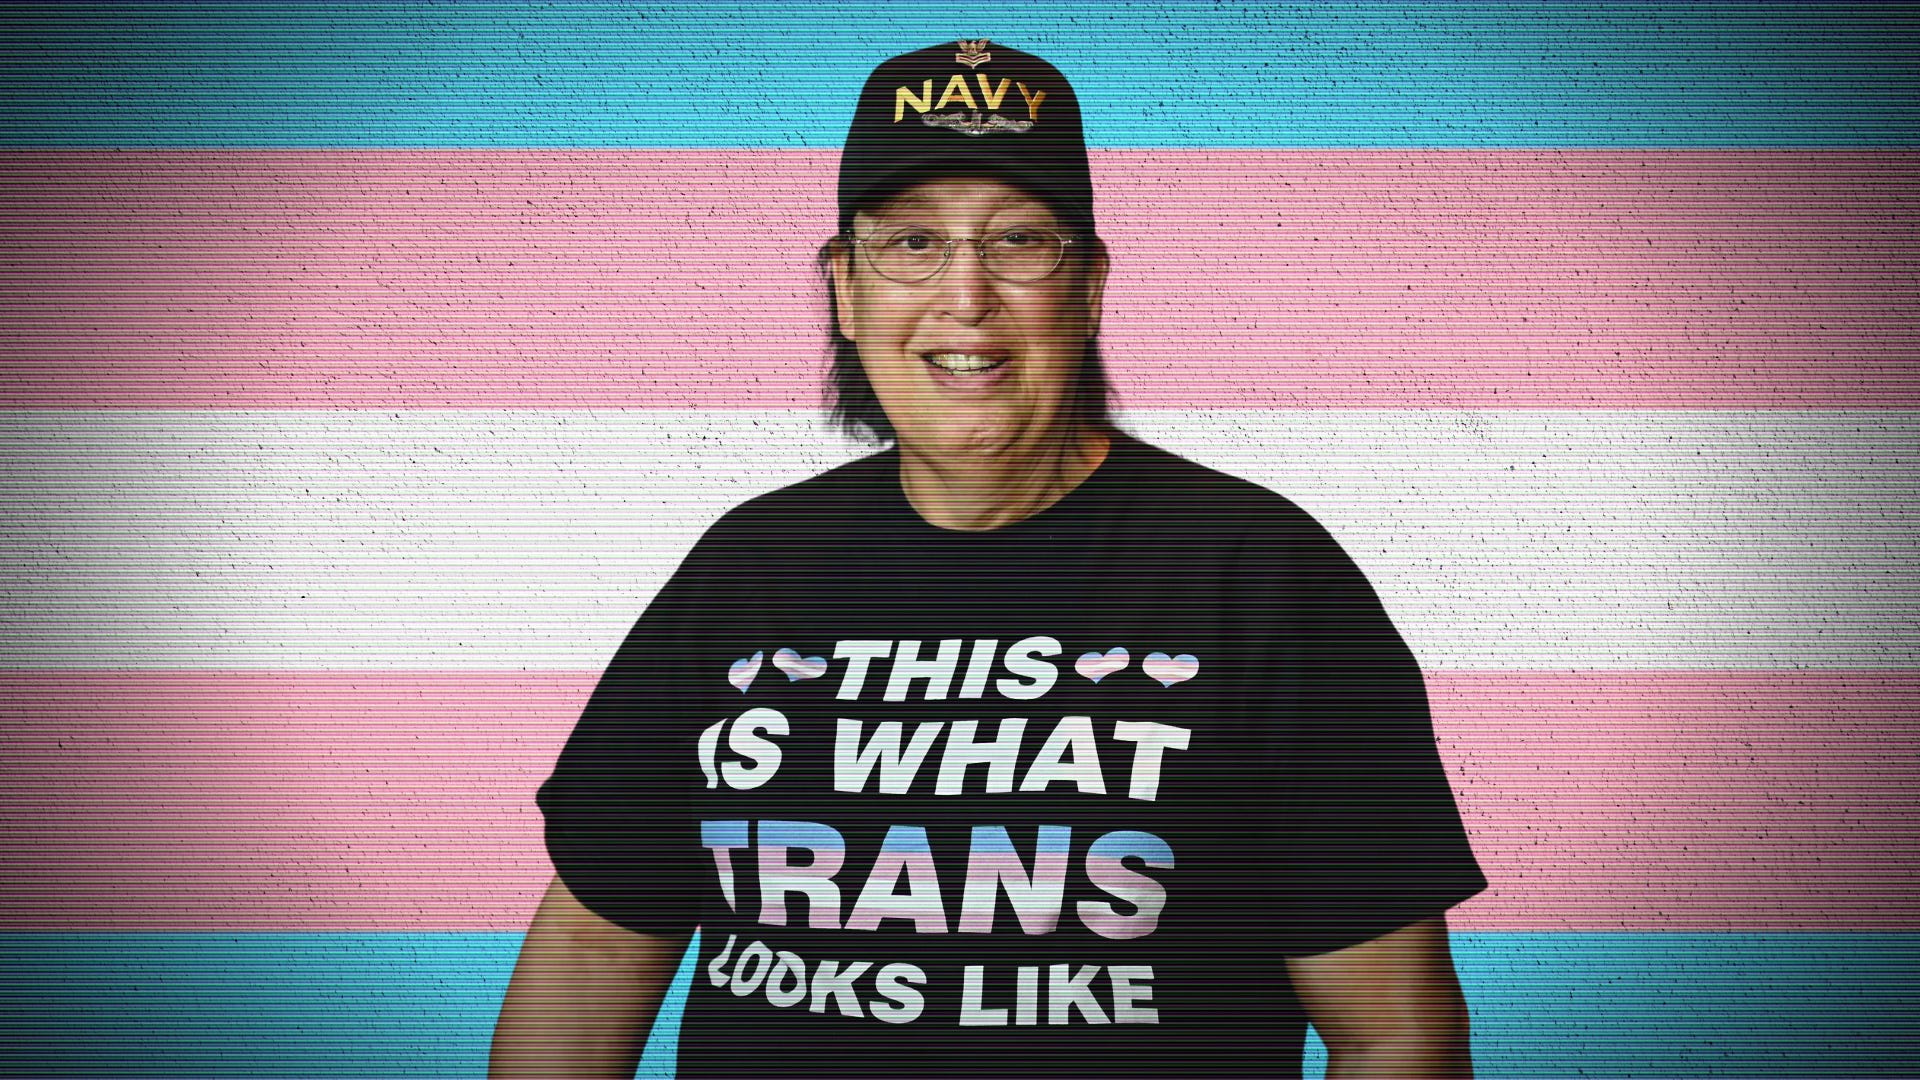 Who designed the transgender flag?